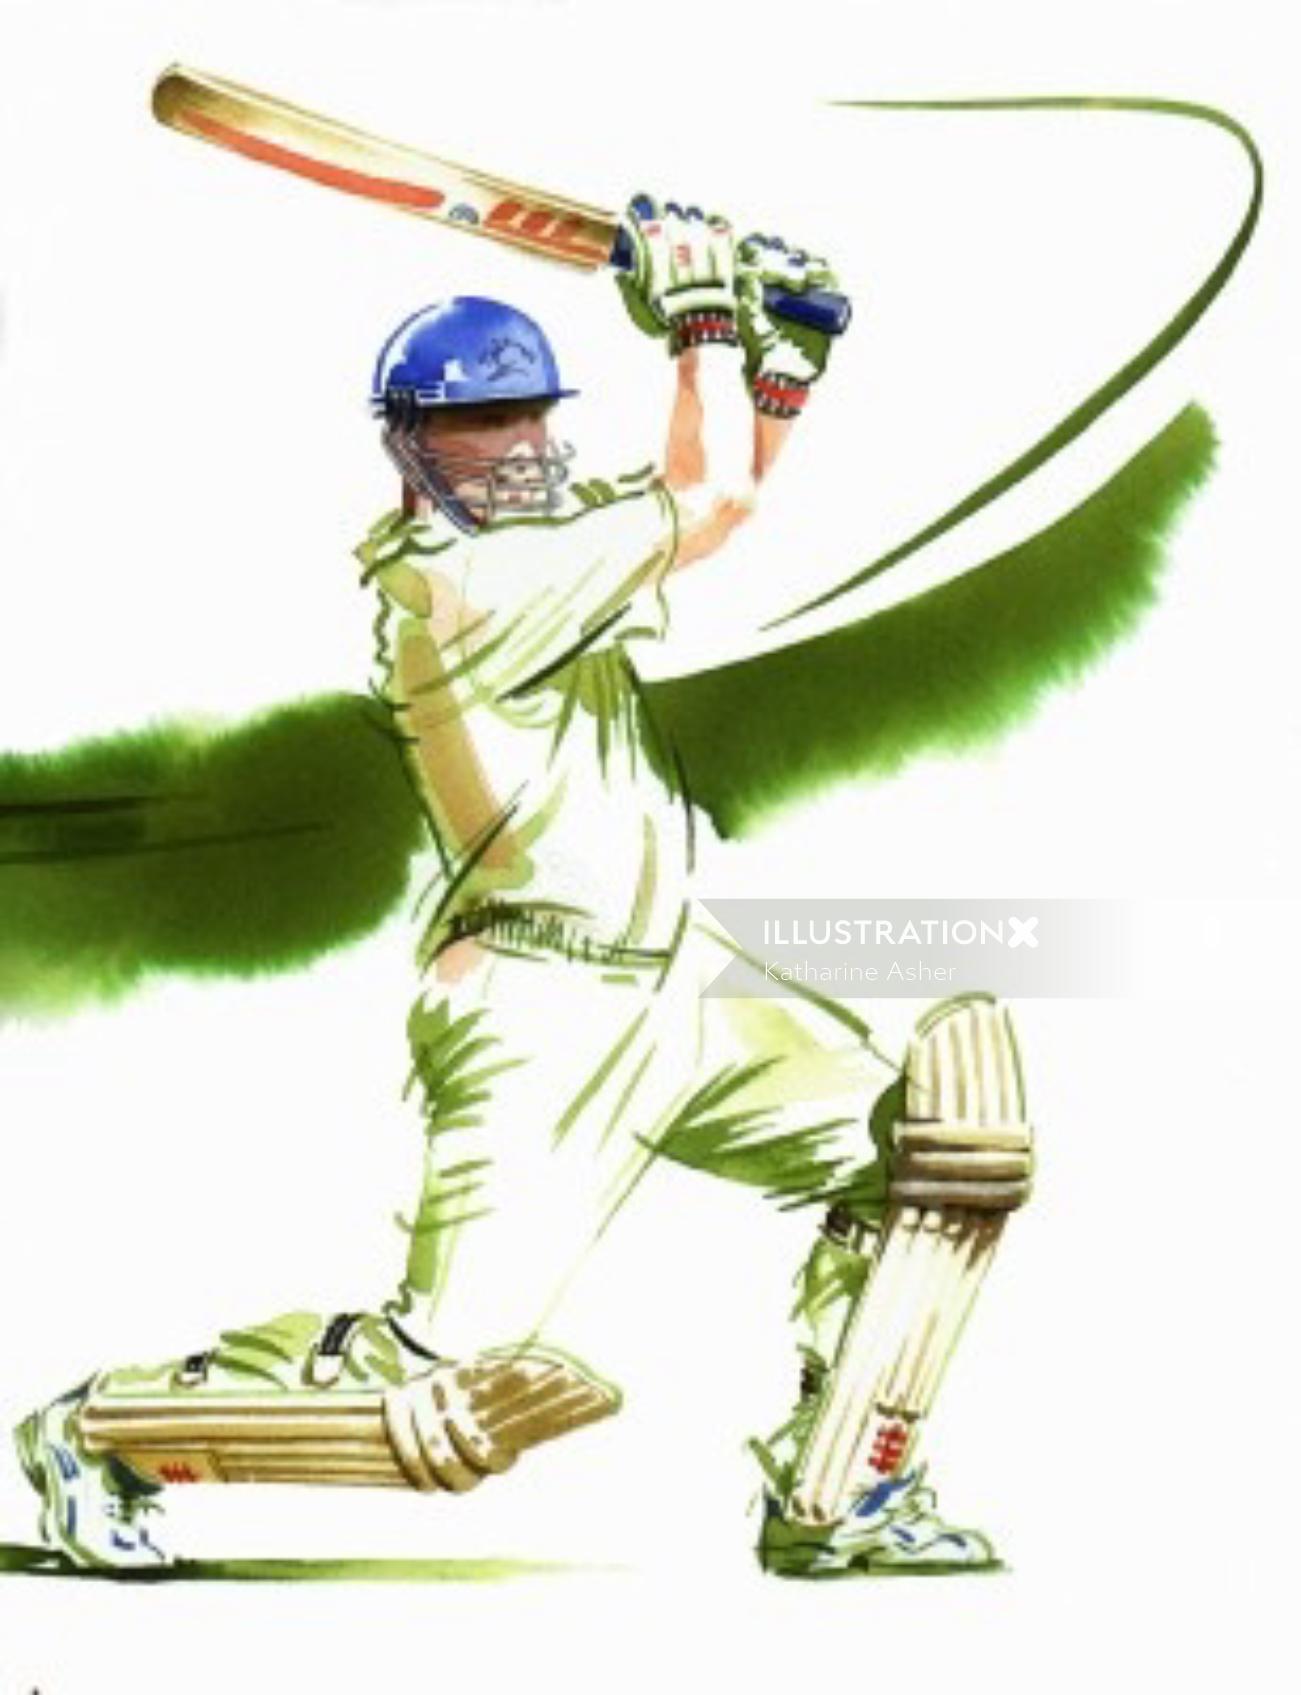 Ilustração de críquete por Katharine Asher